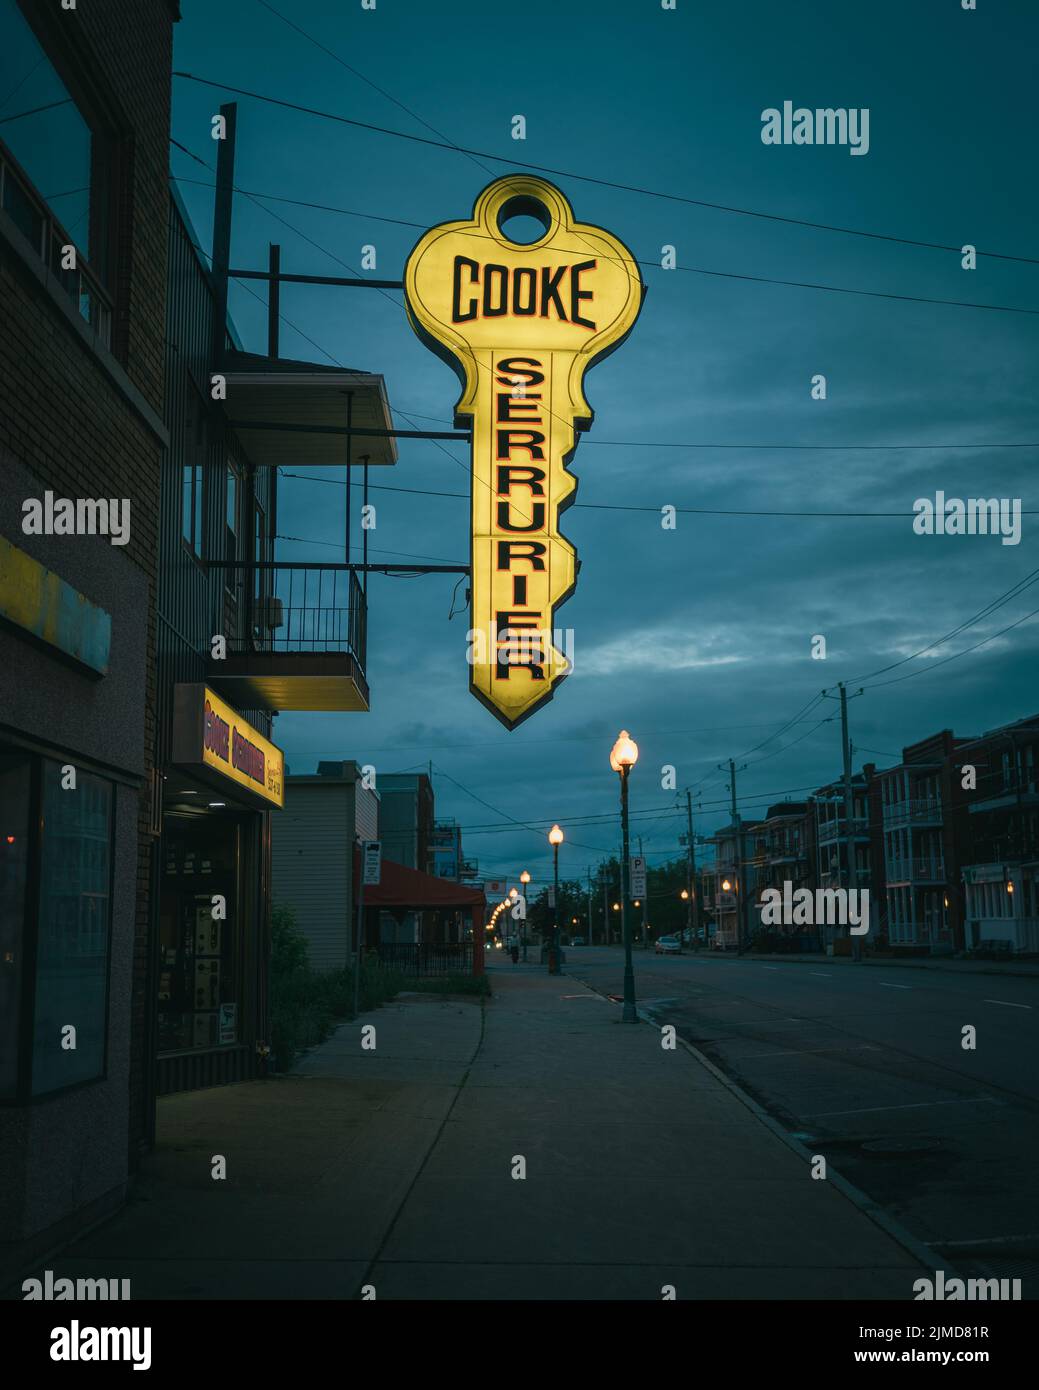 Cooke Serrurier Cerrajería cartel de época por la noche, Shawinigan, Québec, Canadá Foto de stock